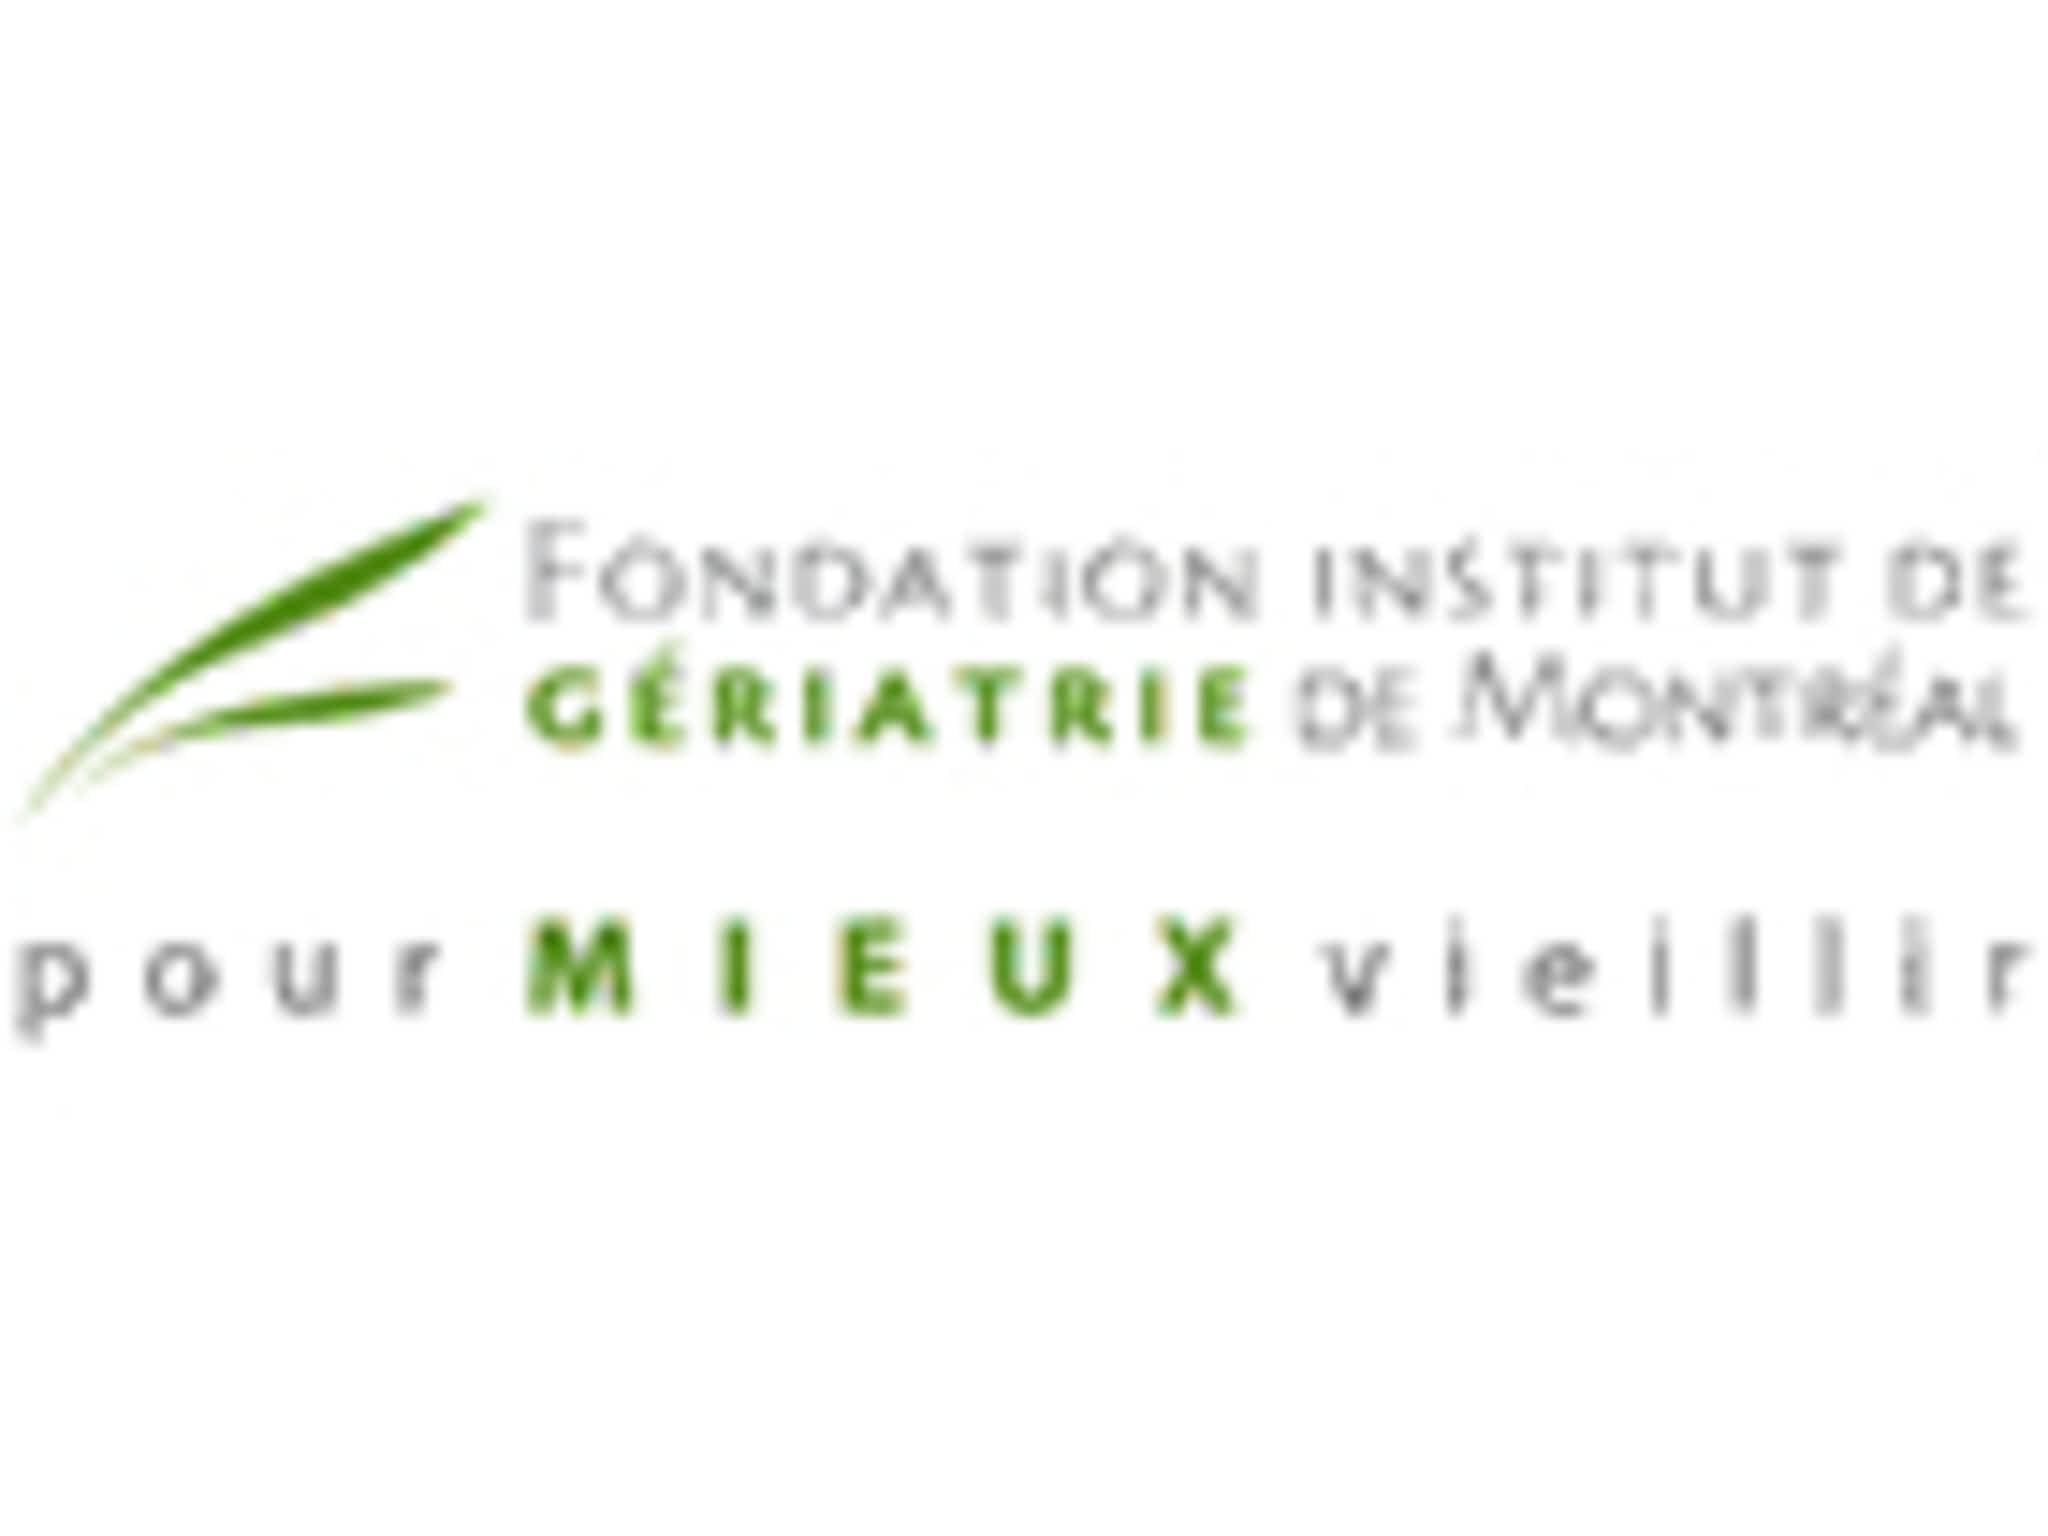 photo Fondation Institut de Gériatrie de Montréal